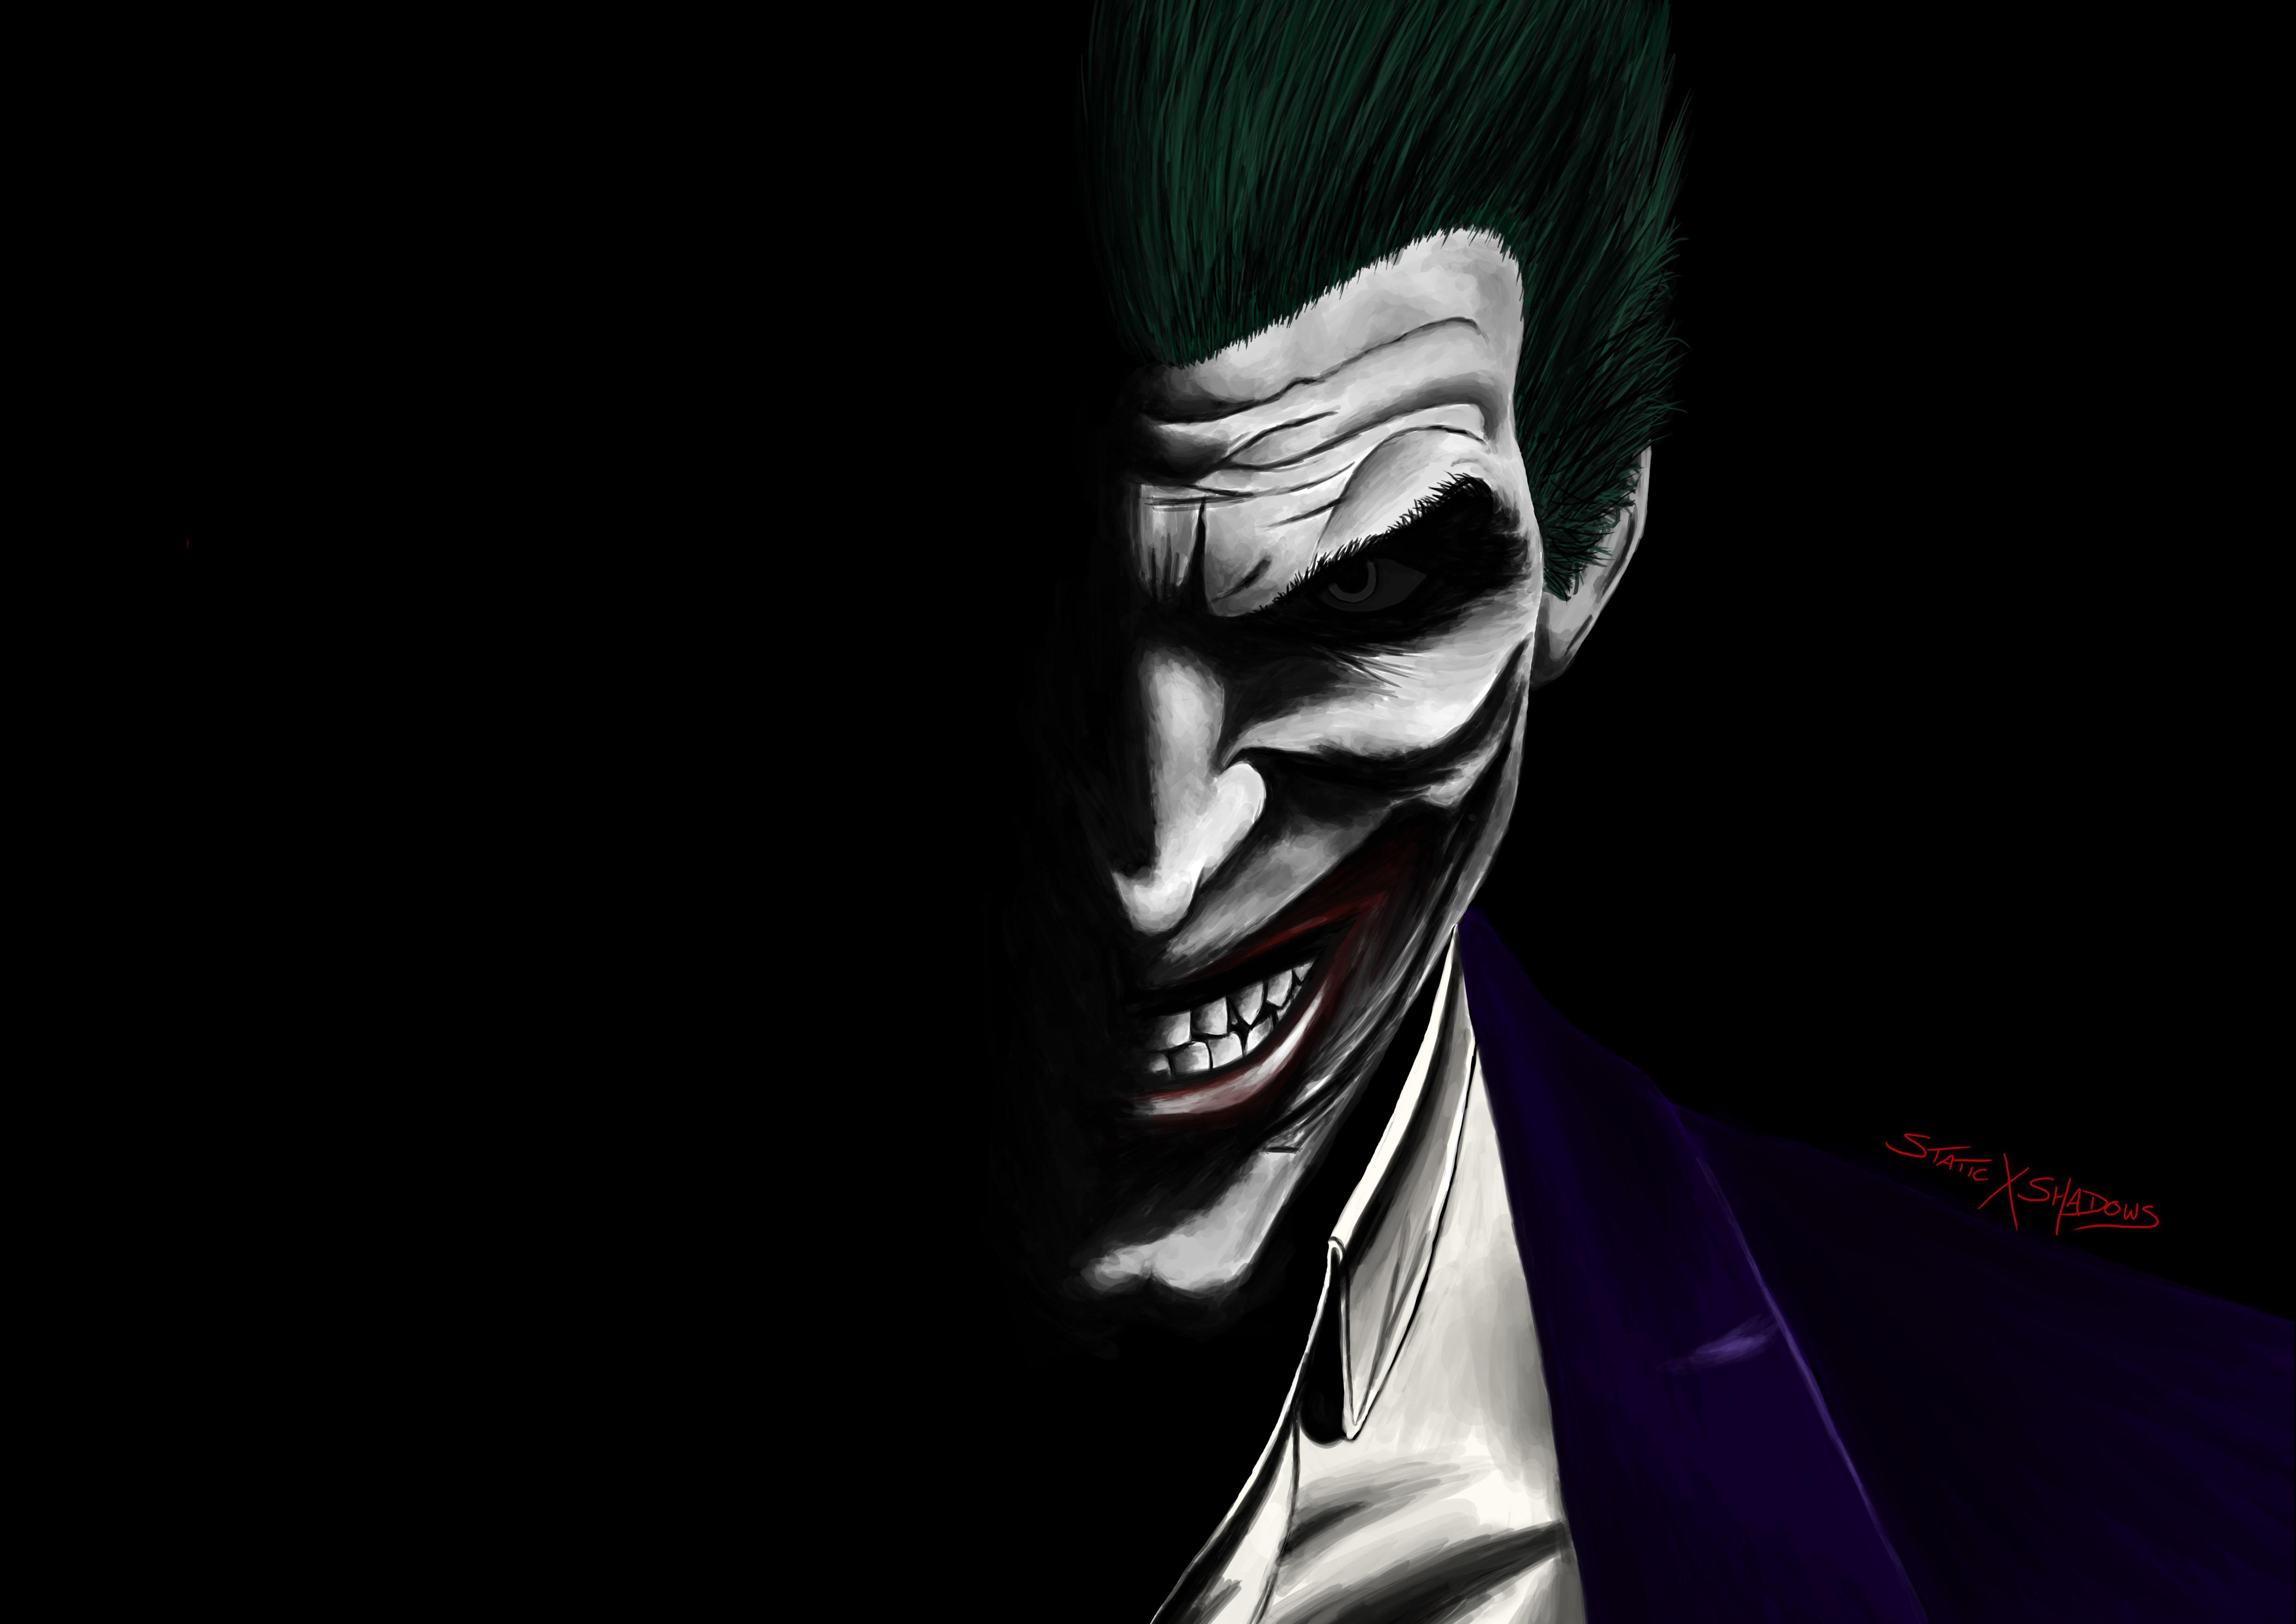 The Joker Wallpapers - Top Những Hình Ảnh Đẹp